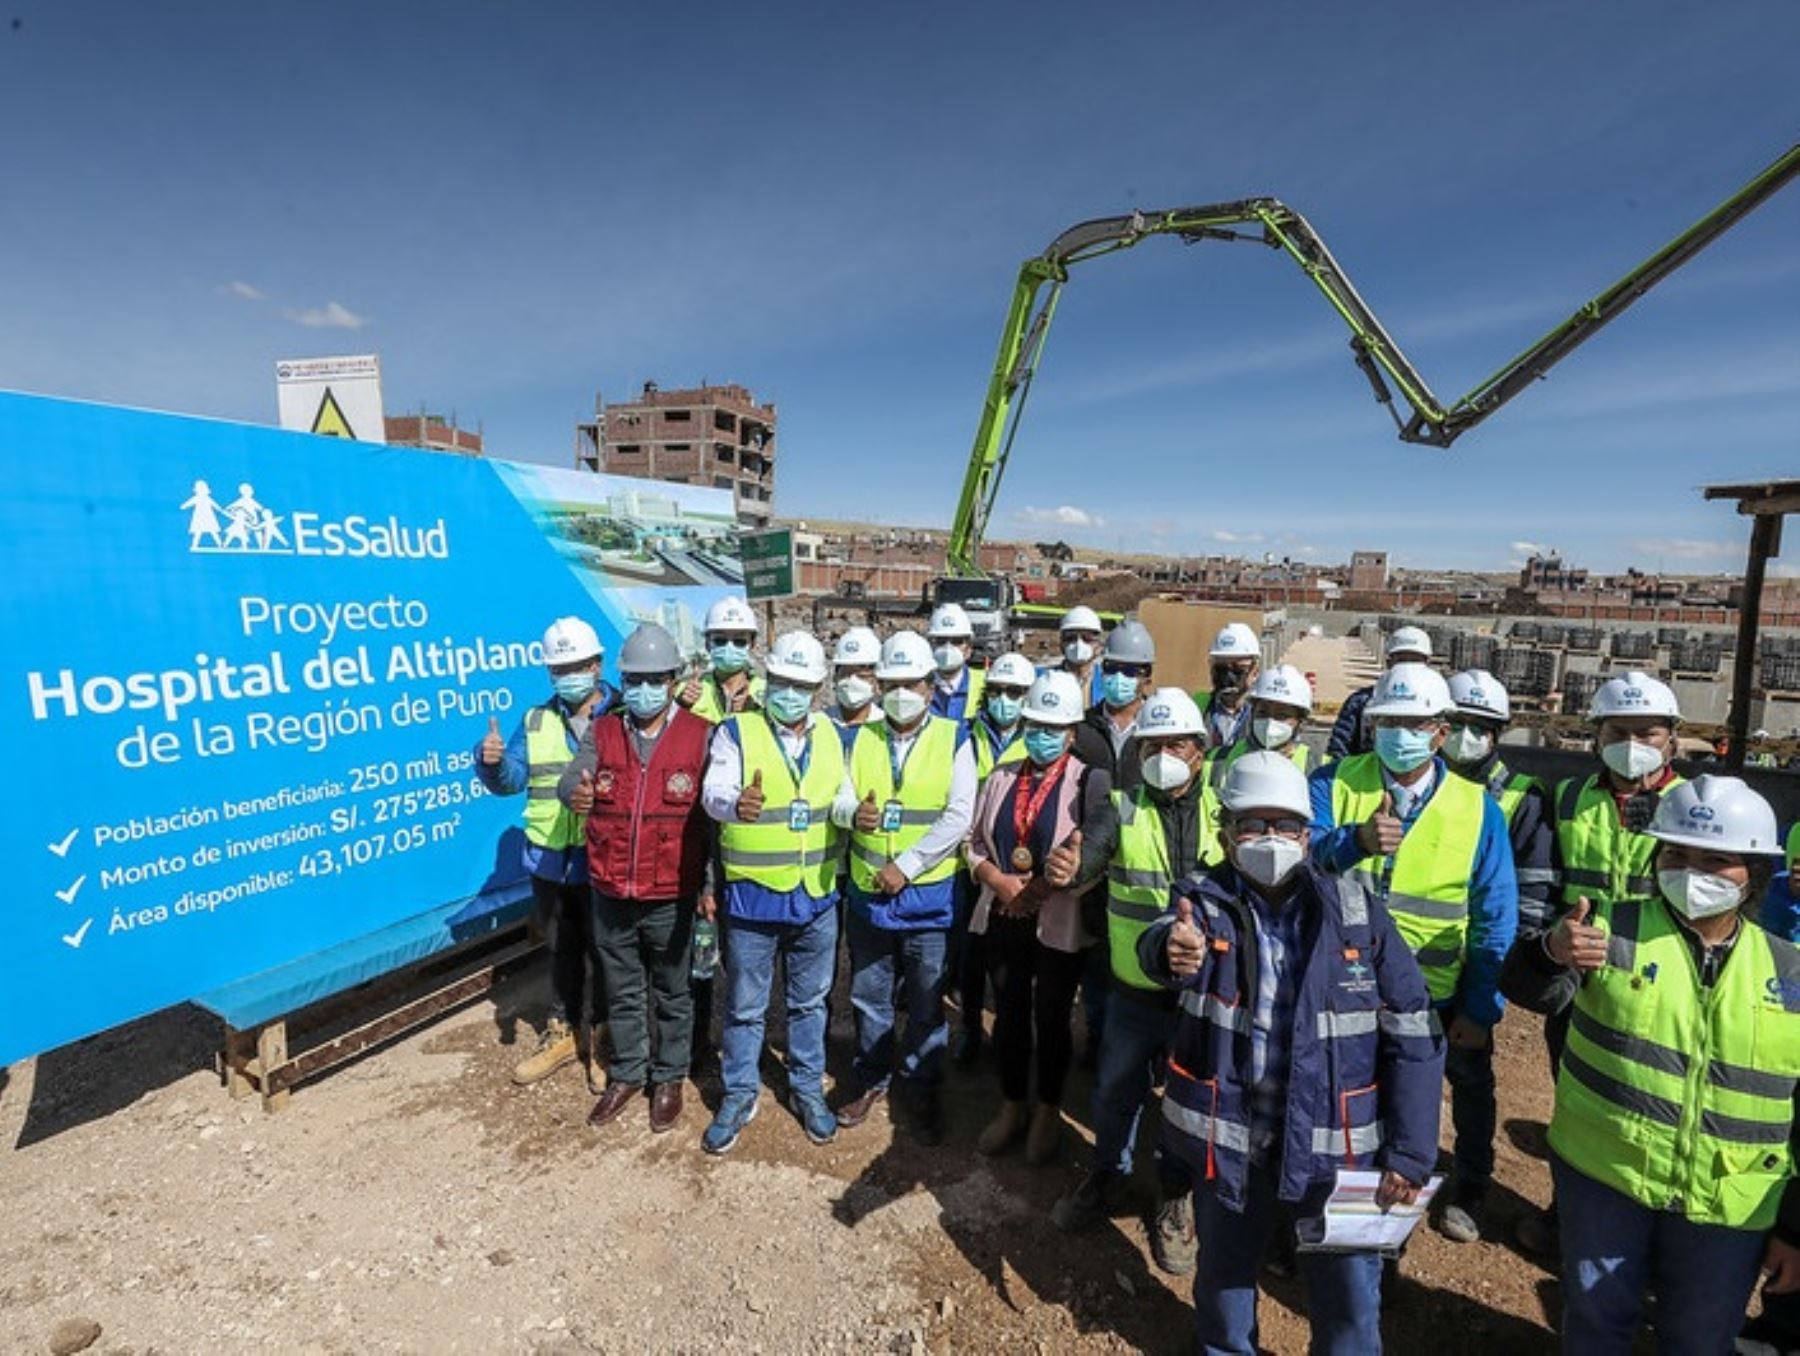 Más de 250,000 pobladores de Puno se beneficiarán con el nuevoo hospital del Altiplano que construye EsSalud en dicha región.